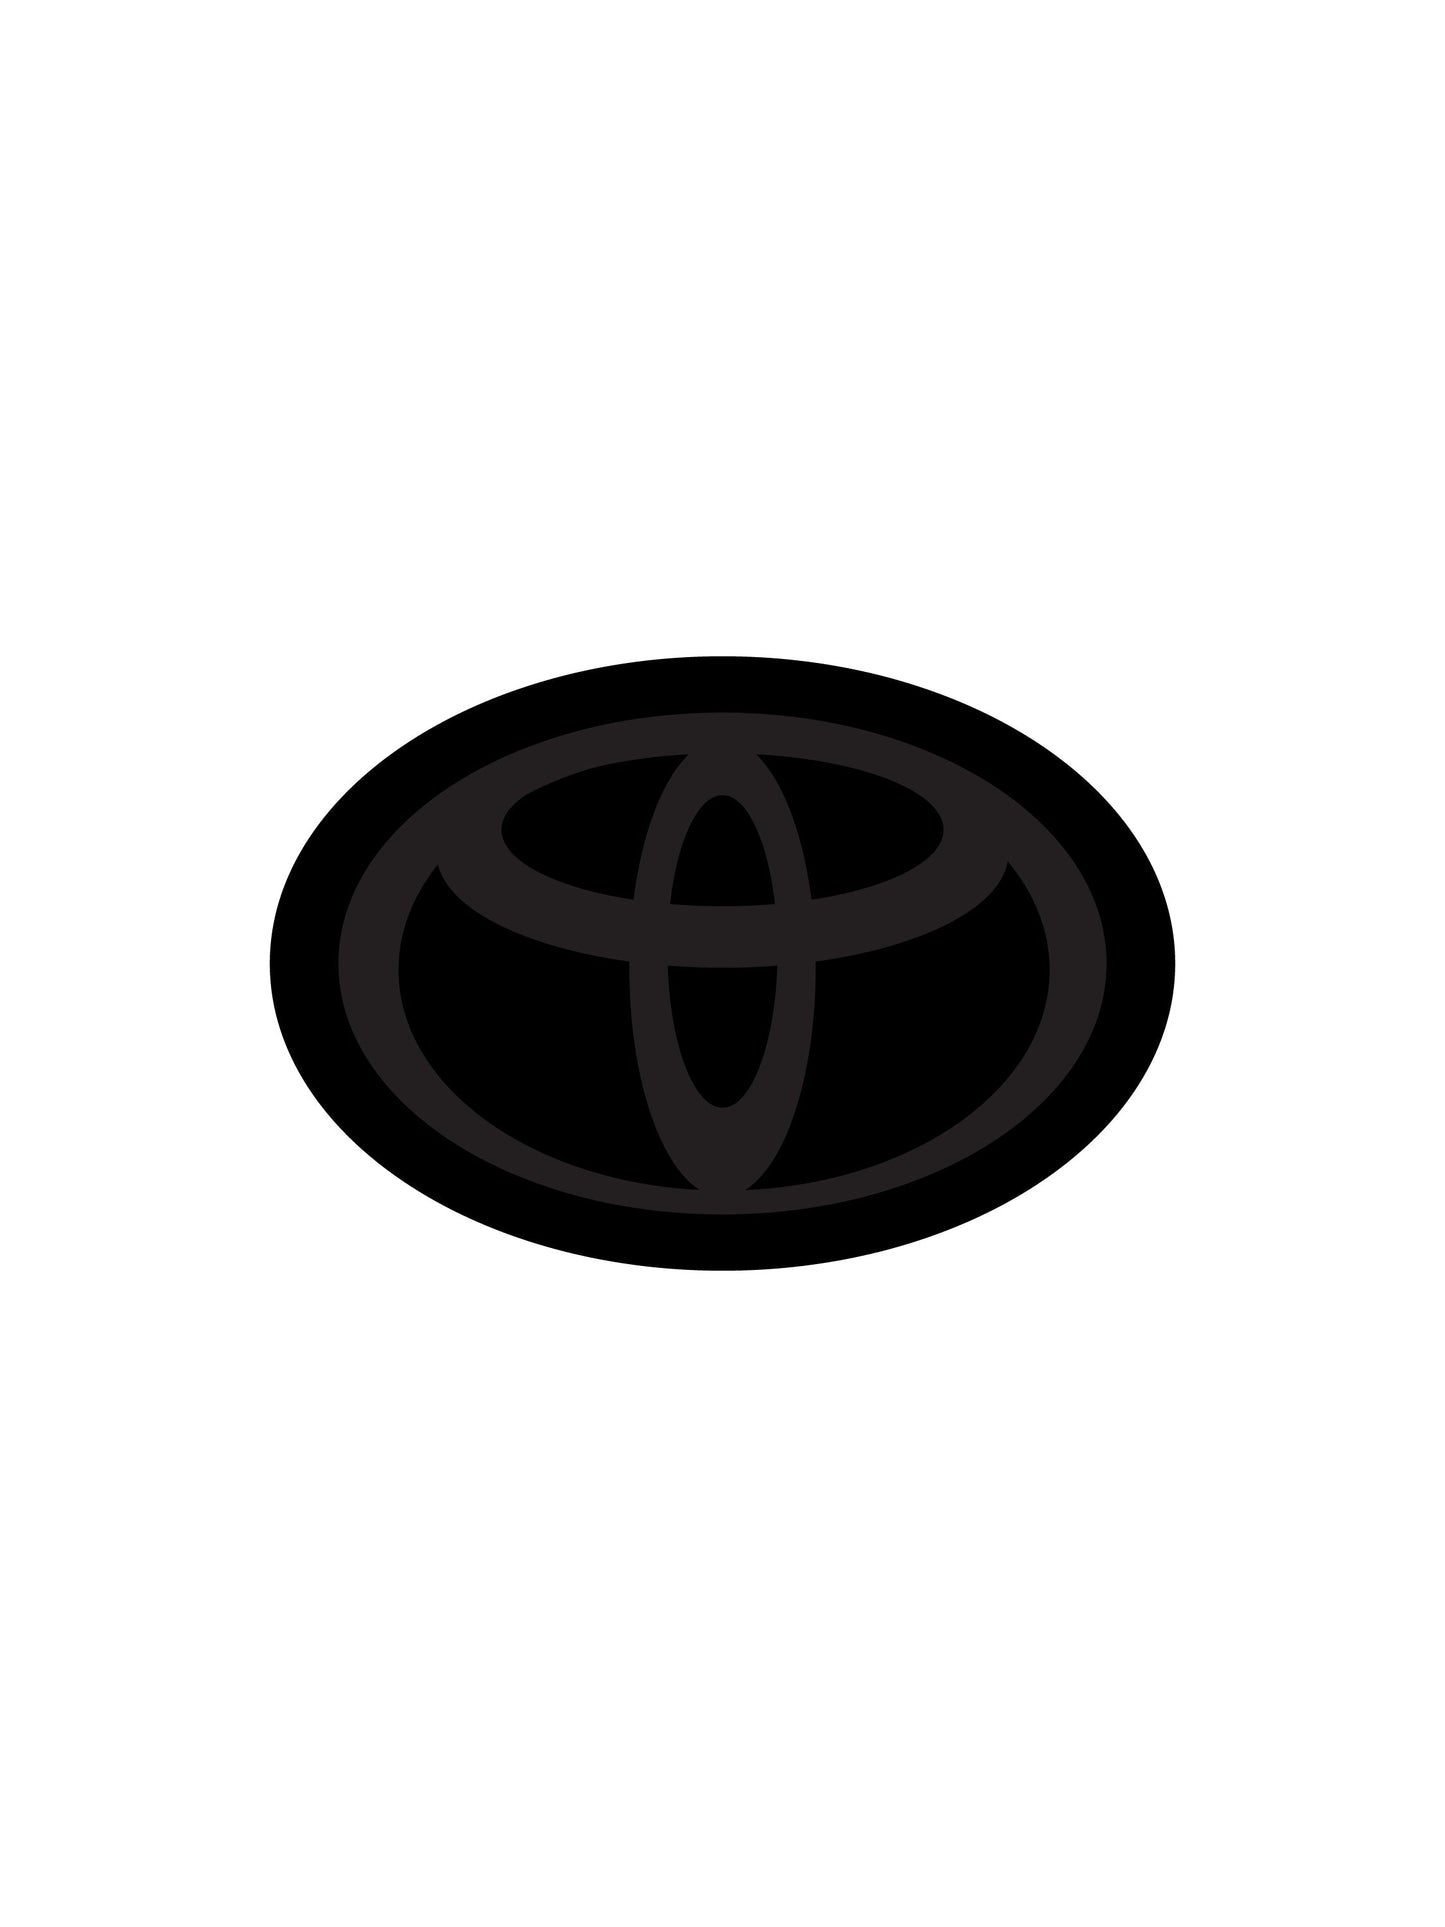 2020-2024 Toyota Highlander Stealth Front Emblem Vinyl Overlay